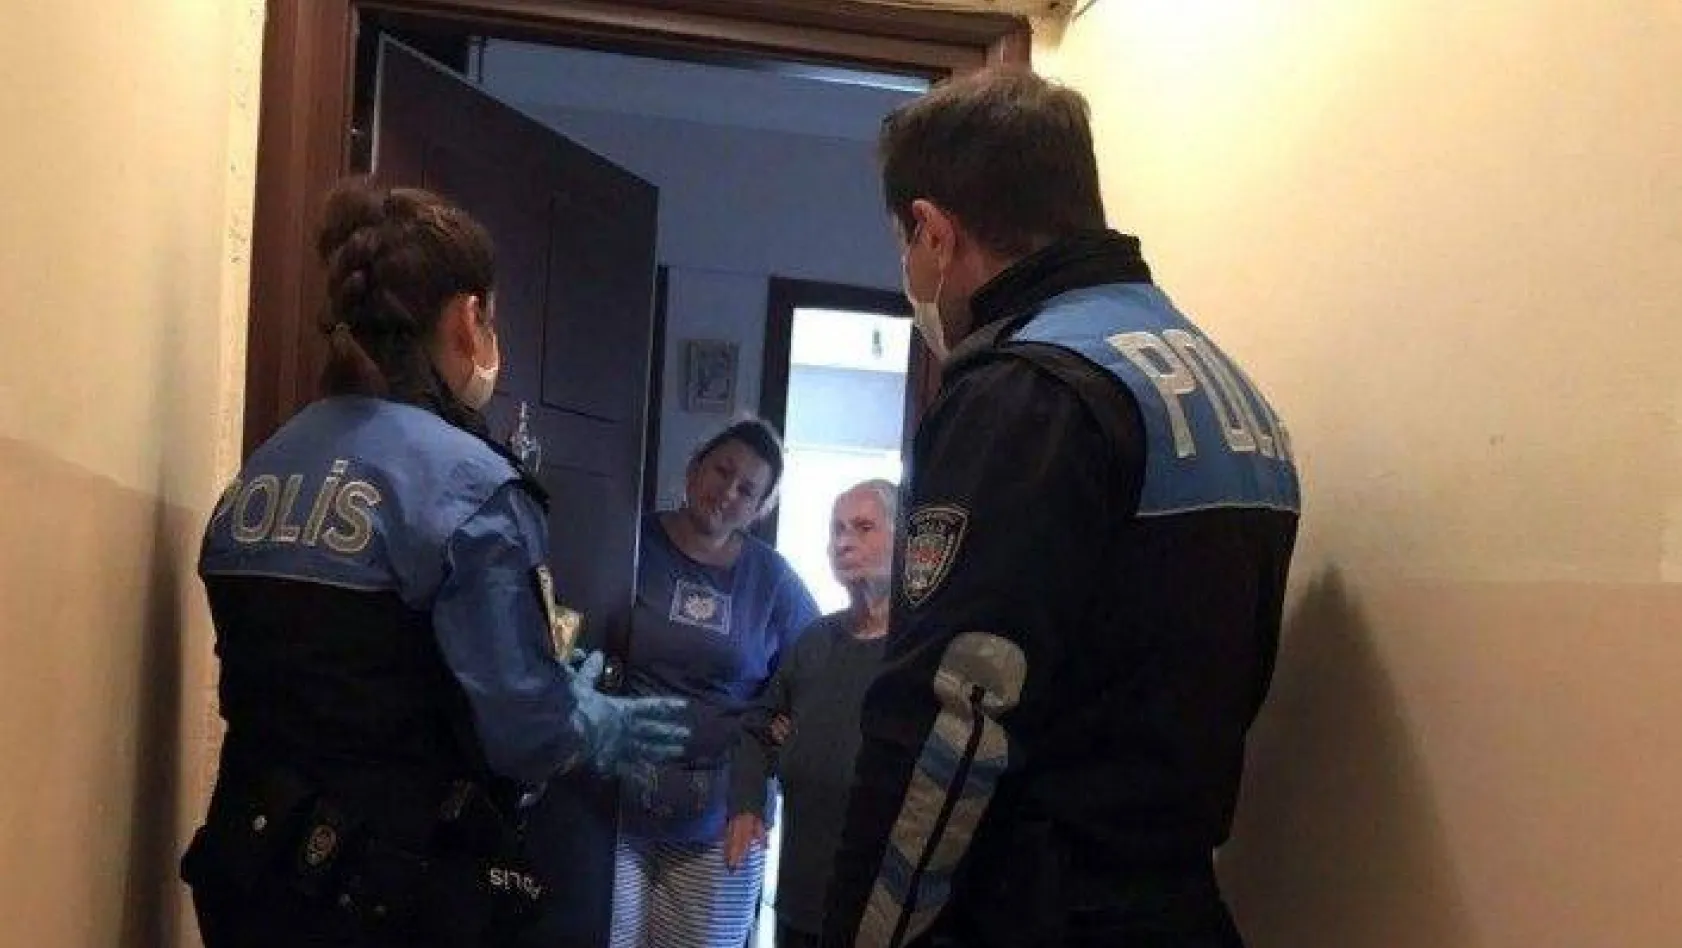 İstanbul'da ev ev dolaşan polis, korona virüs dolandırıcılarına karşı vatandaşı uyardı